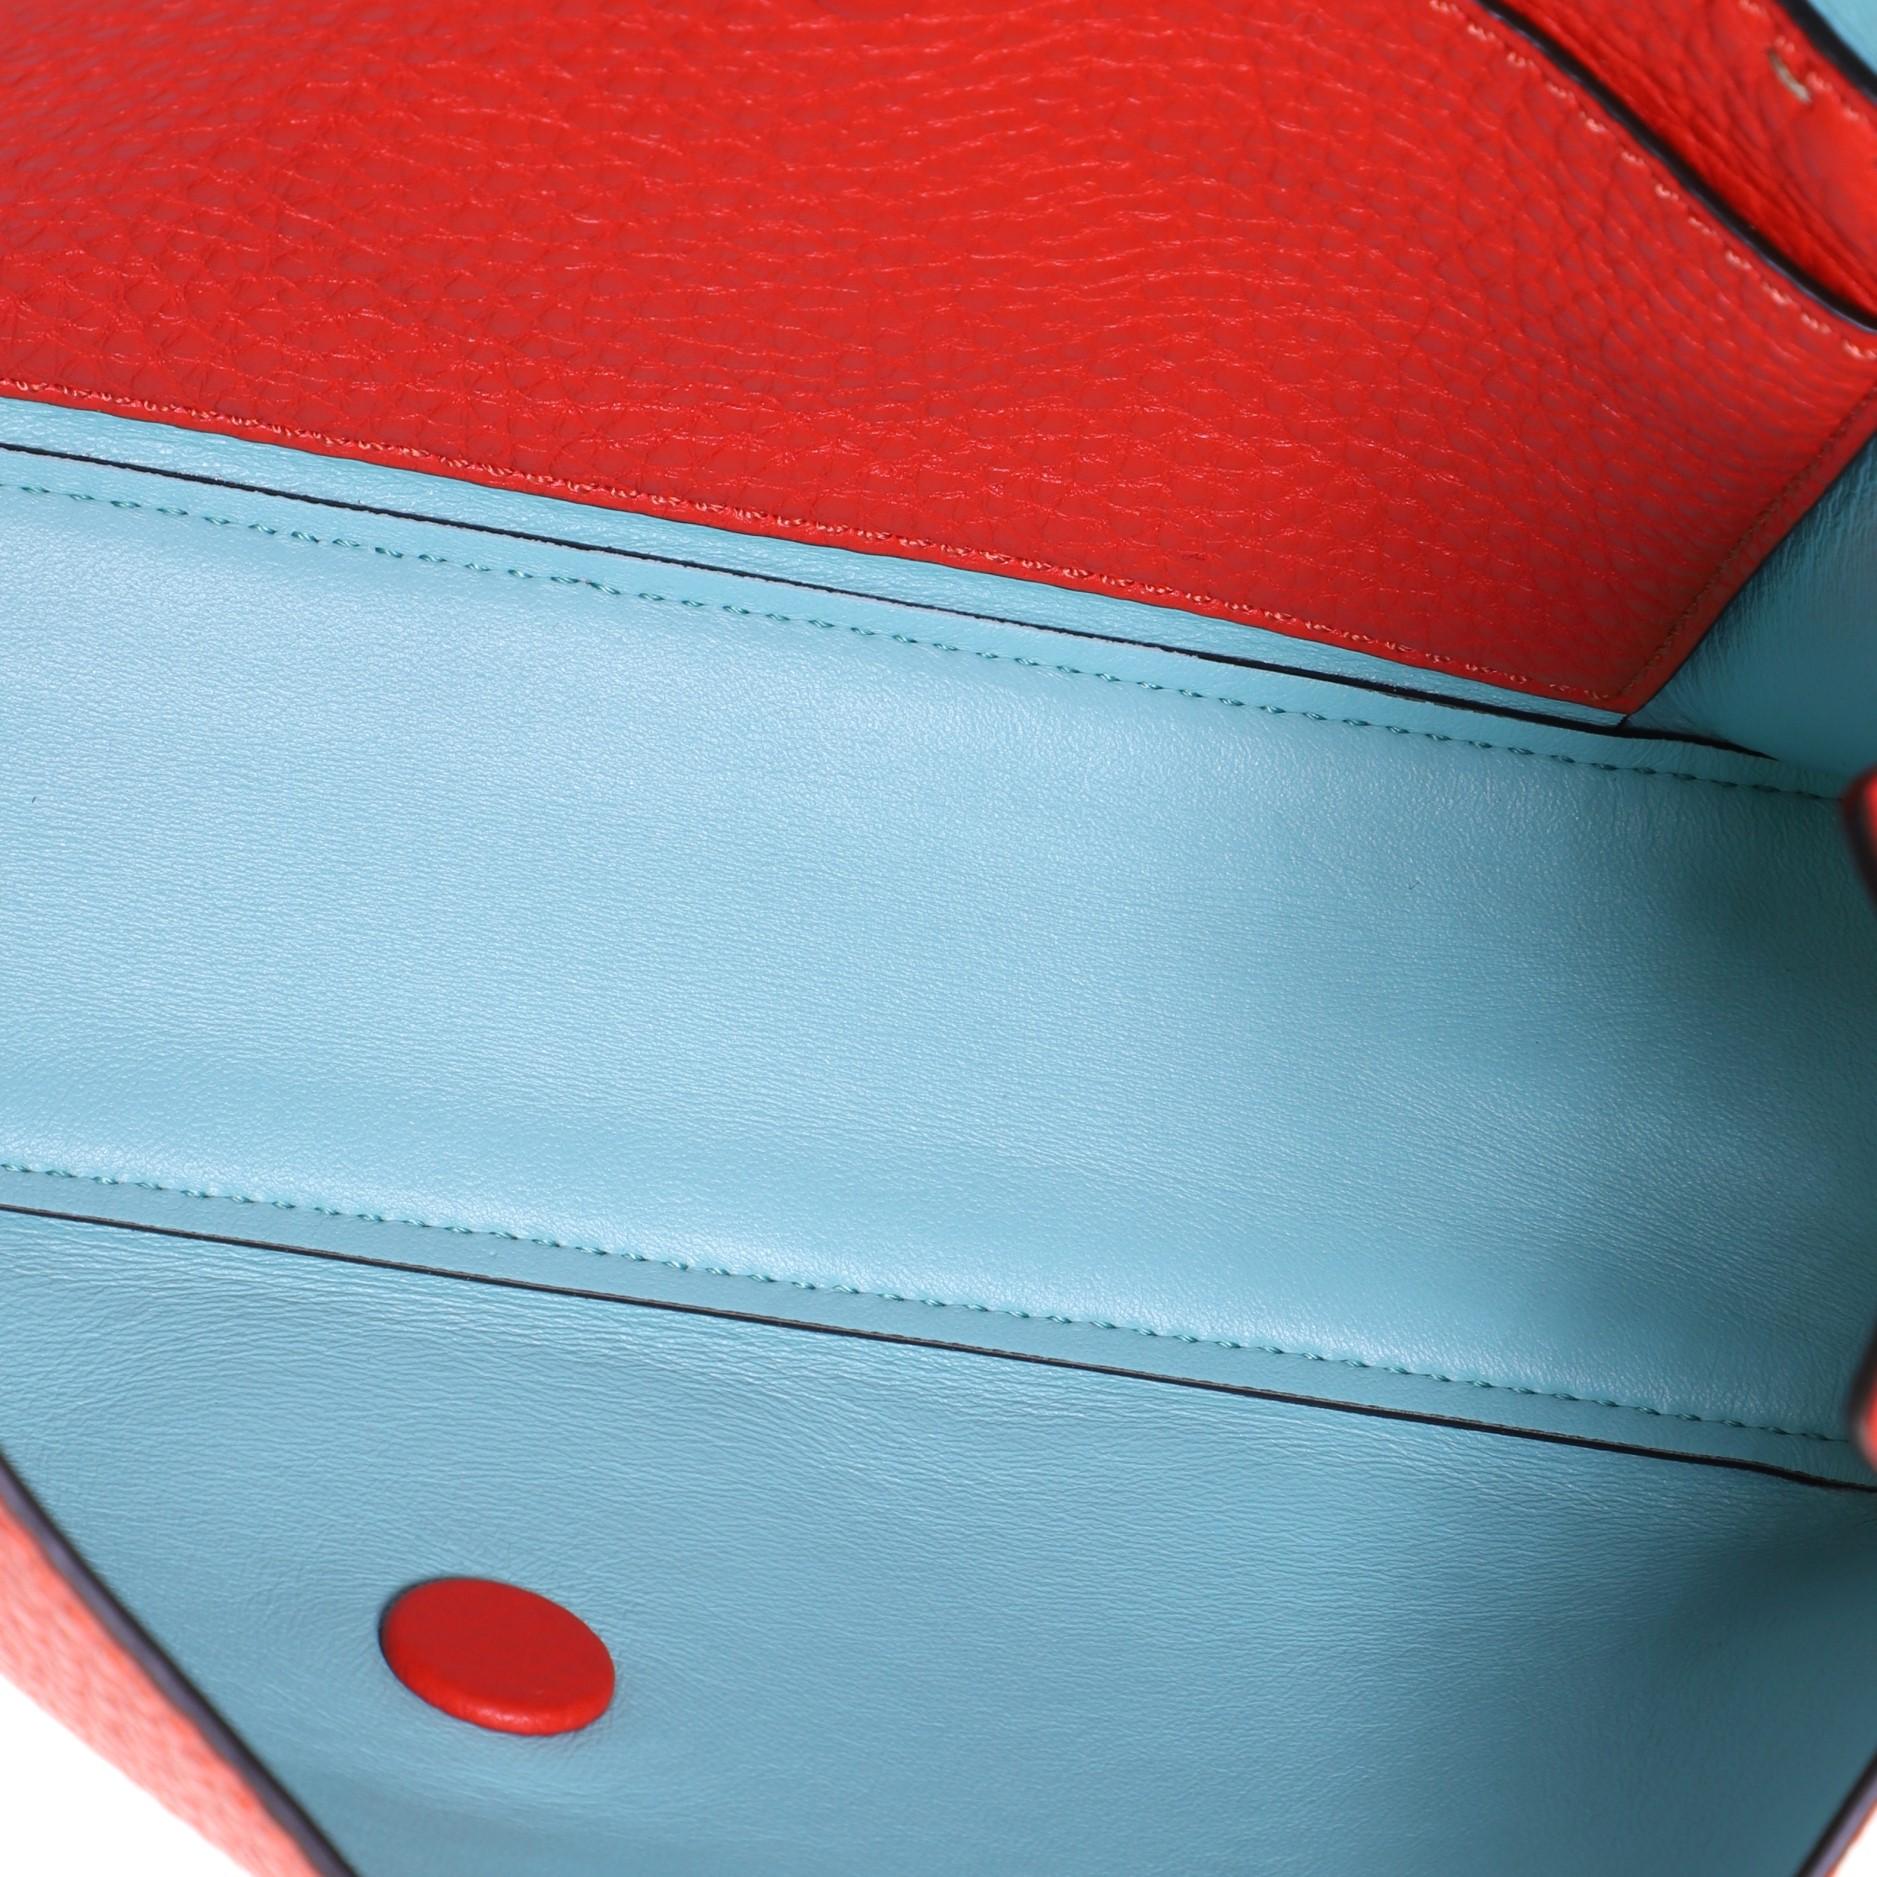 Red Fendi Selleria Baguette NM Bag Leather Medium